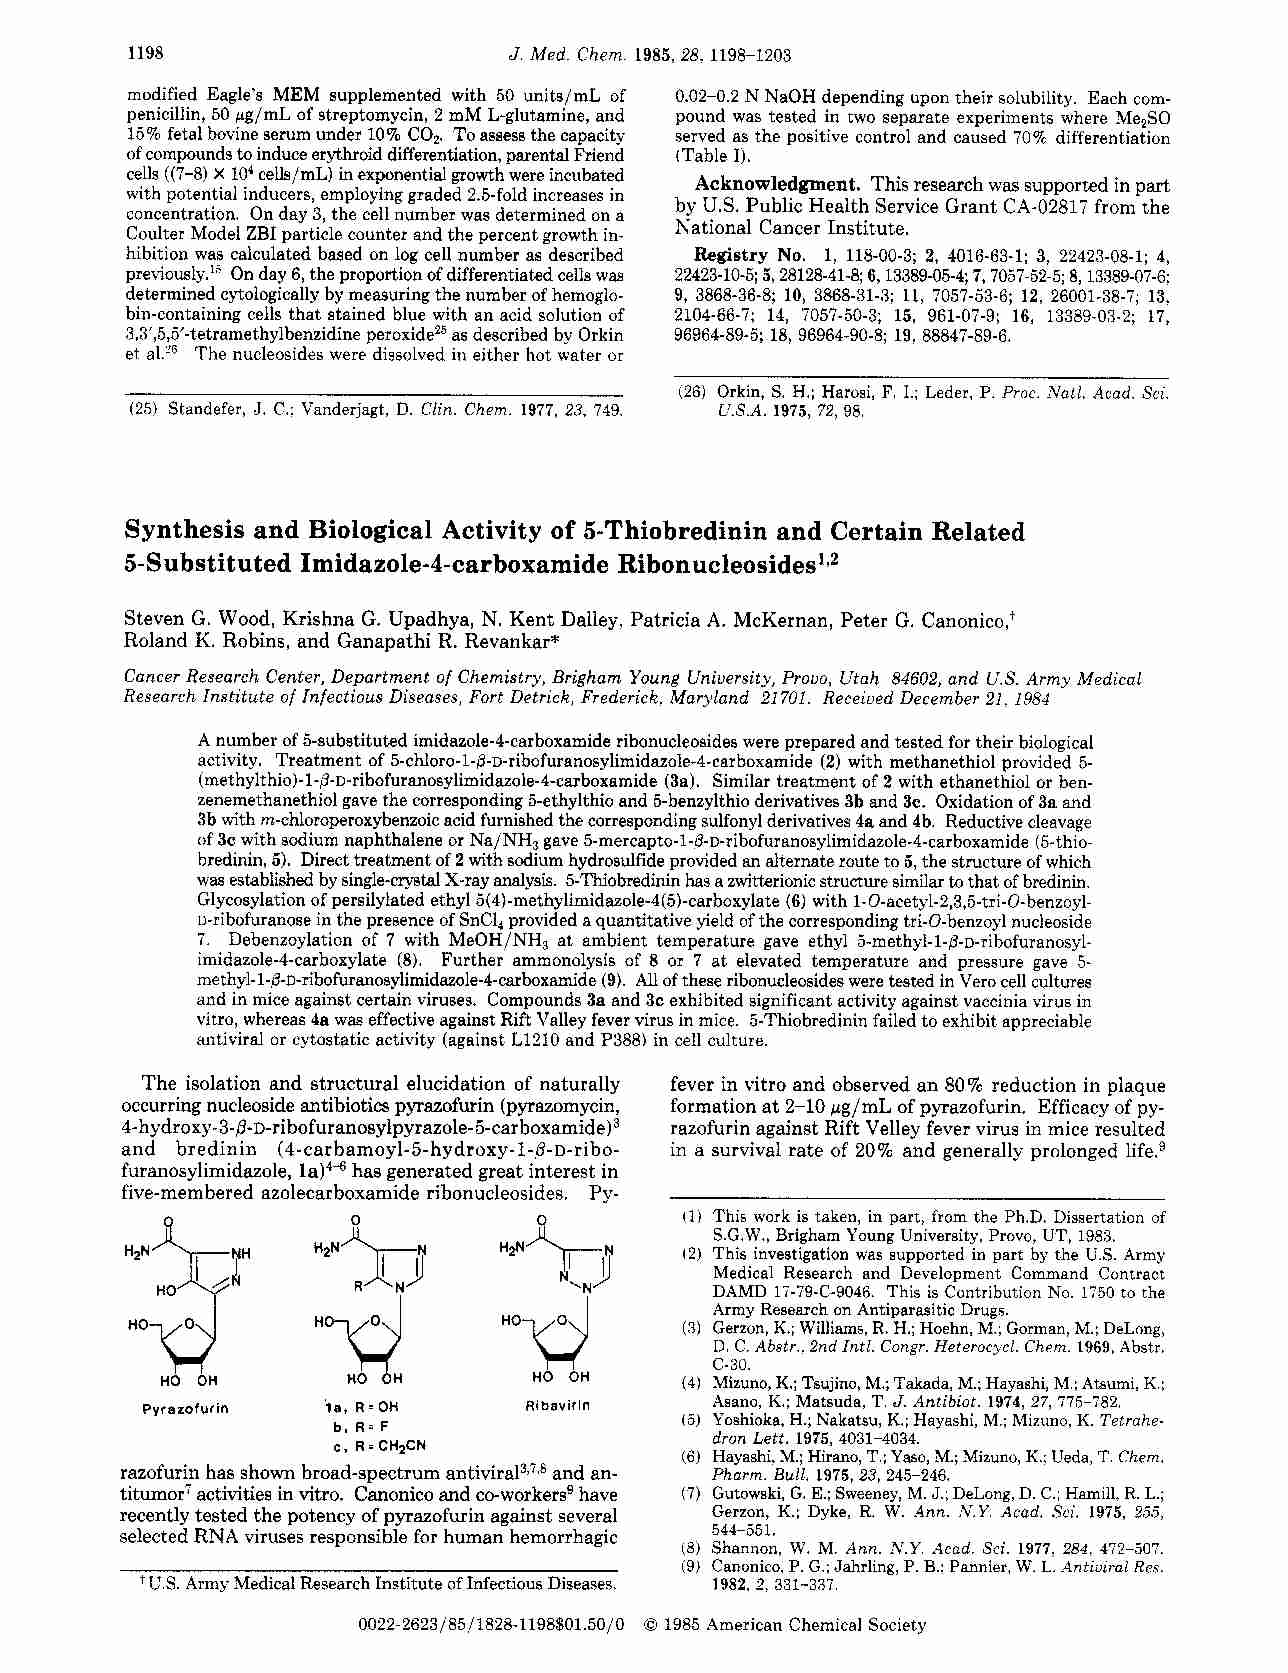 Nowoczesne metody wytwarzania leków - wykład - Chemistry - strona 1